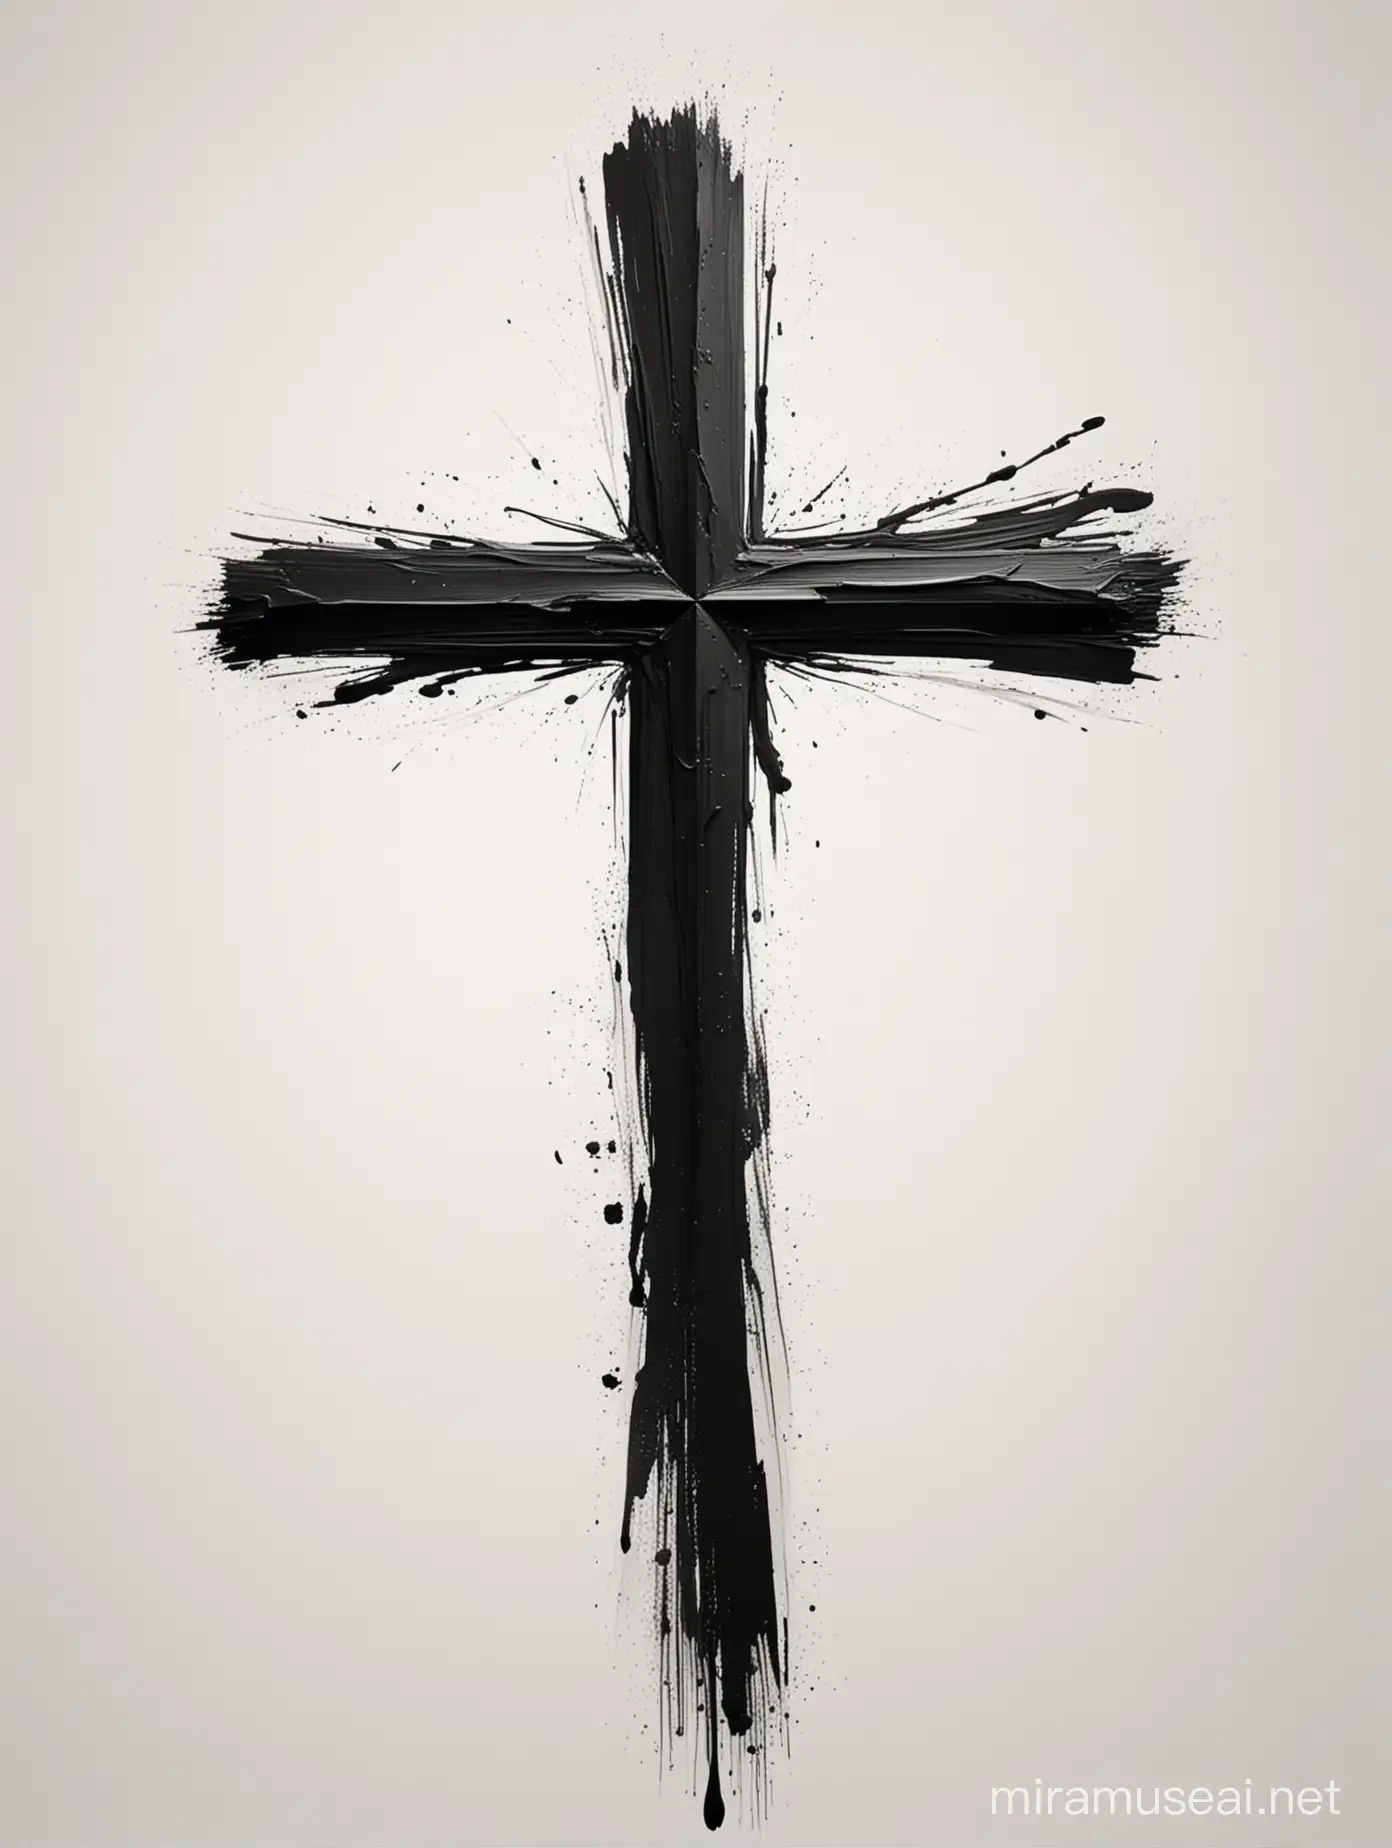 Elegant Black Christian Cross with Brush Strokes on White Background